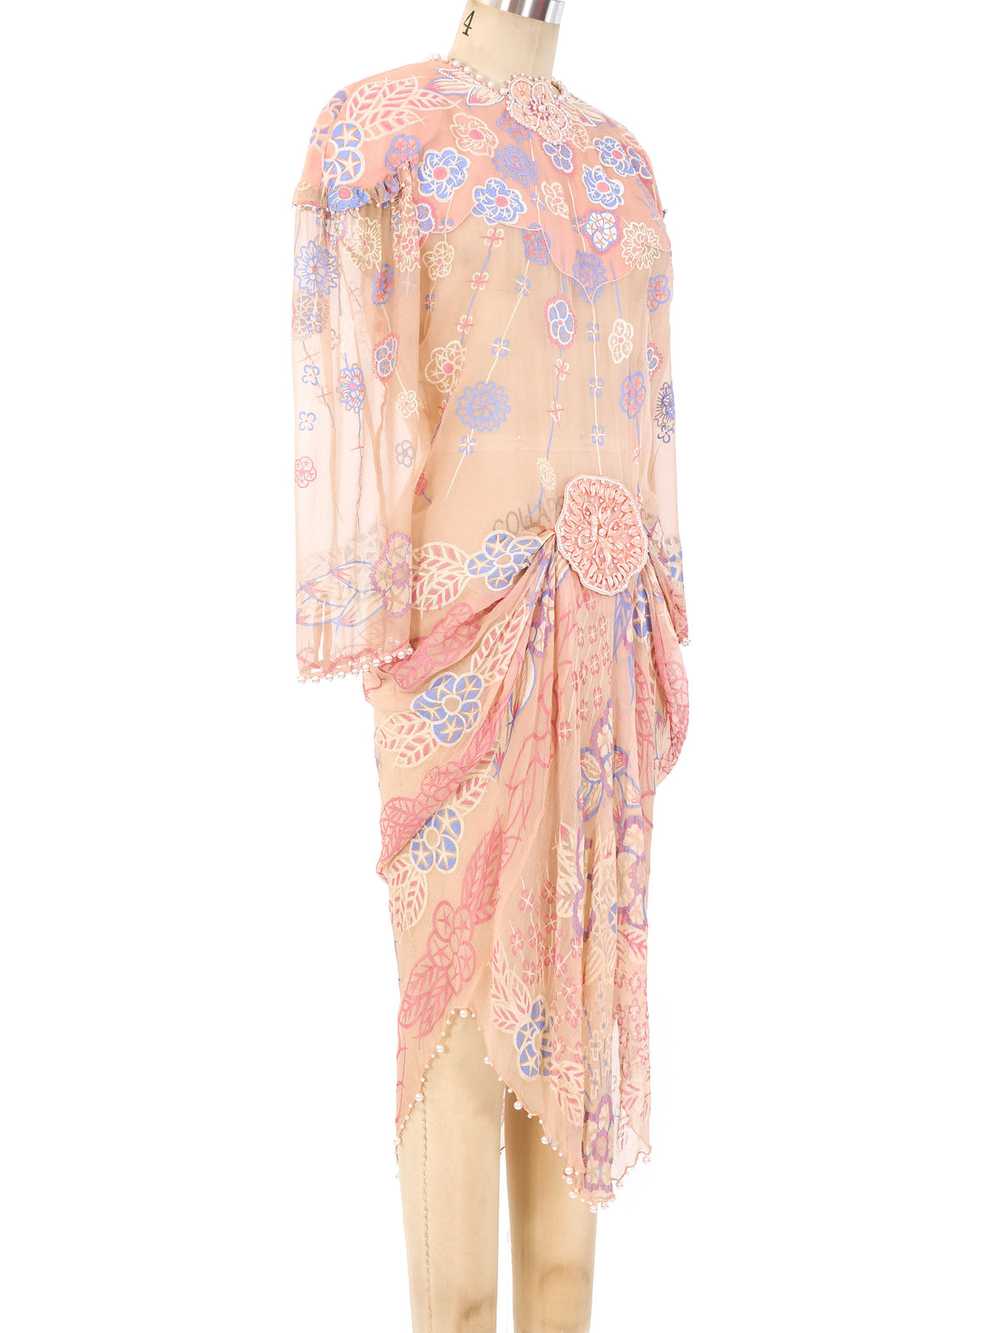 Zandra Rhodes Embellished Chiffon Dress - image 2